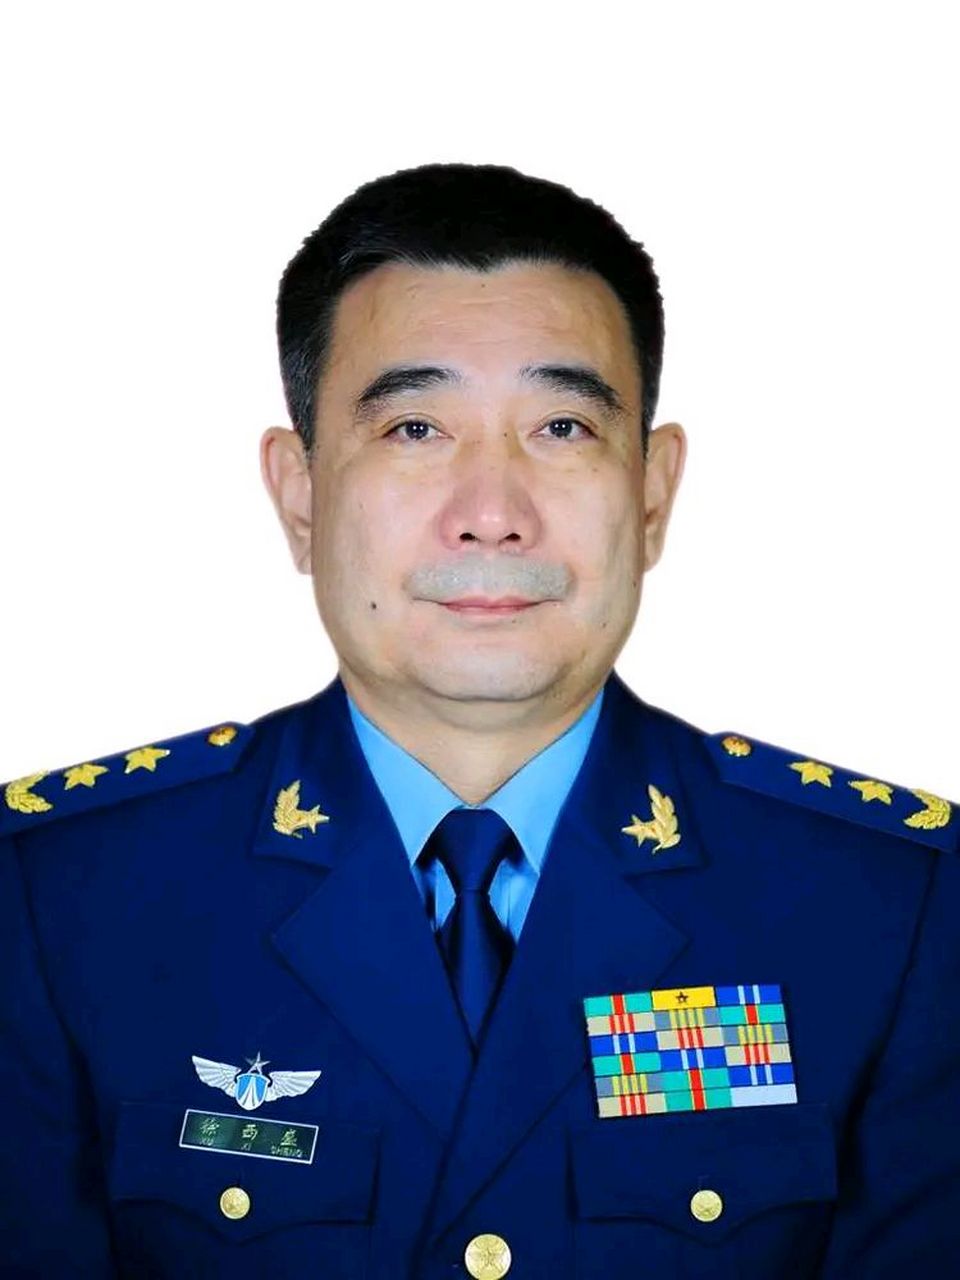 中国火箭军司令员图片